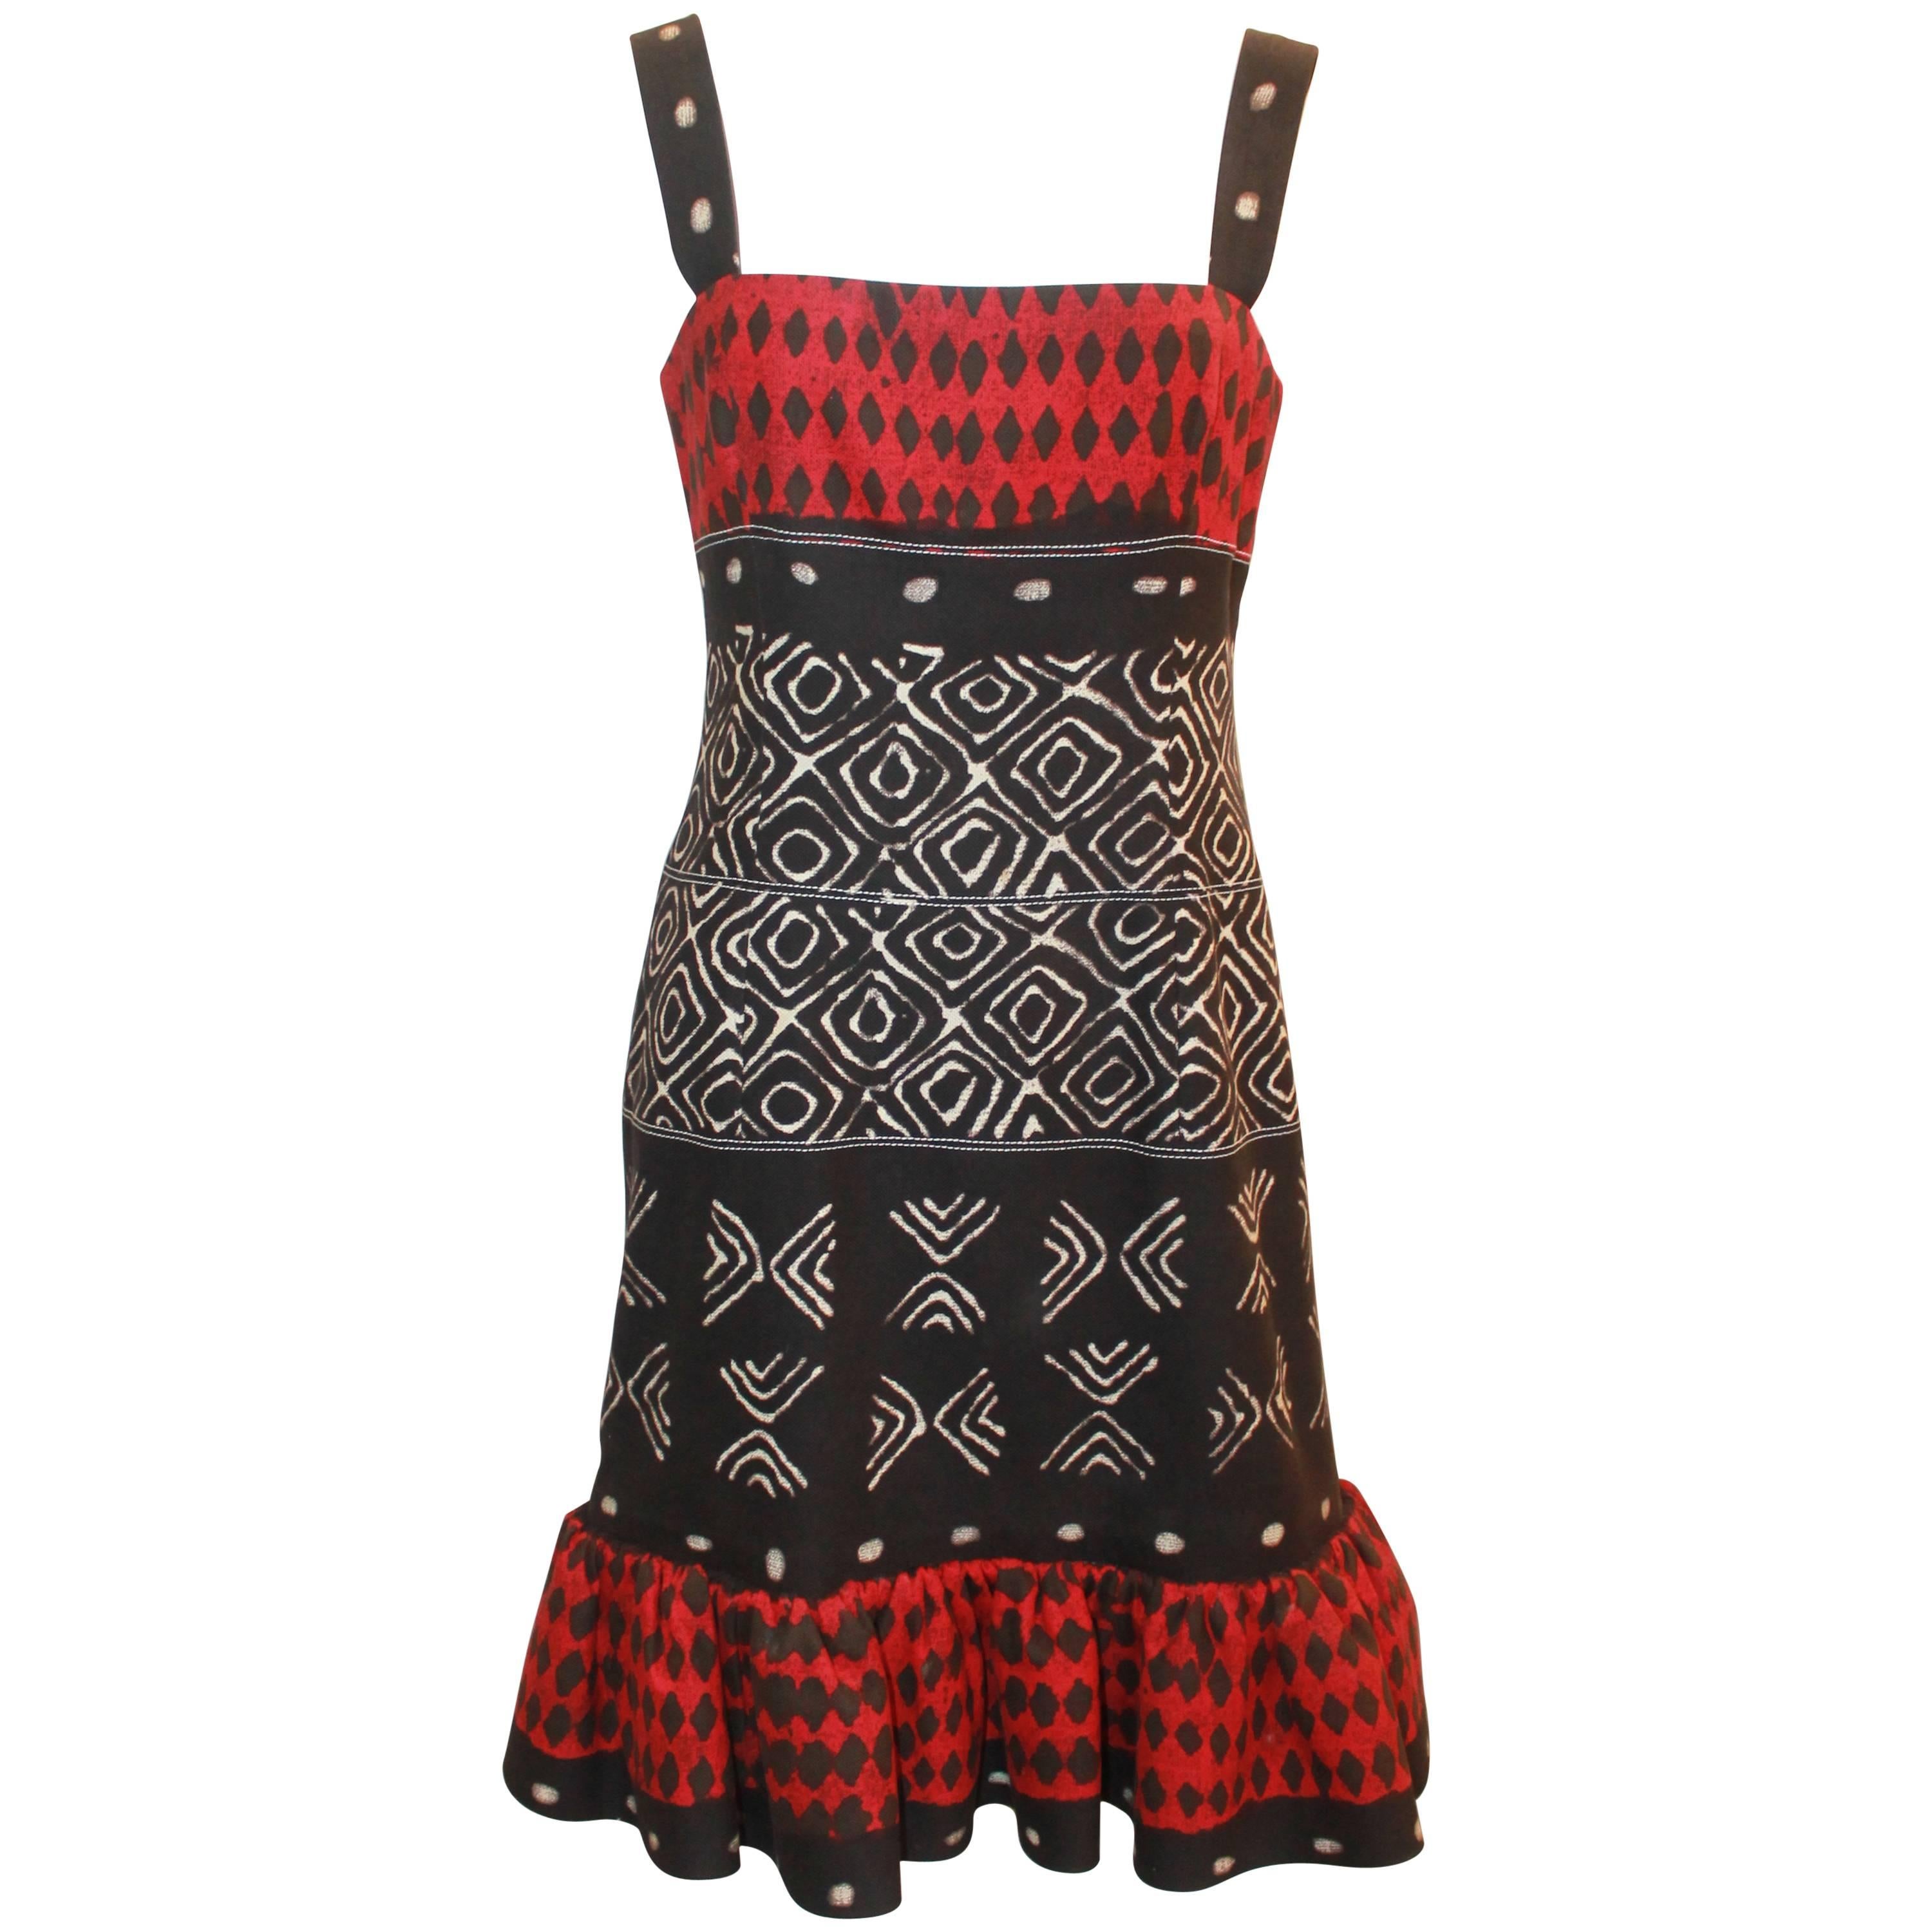 Oscar de la Renta ärmelloses Kleid aus Baumwolle mit Stammesdruck in Rot, Schwarz & Elfenbein - 8 im Angebot